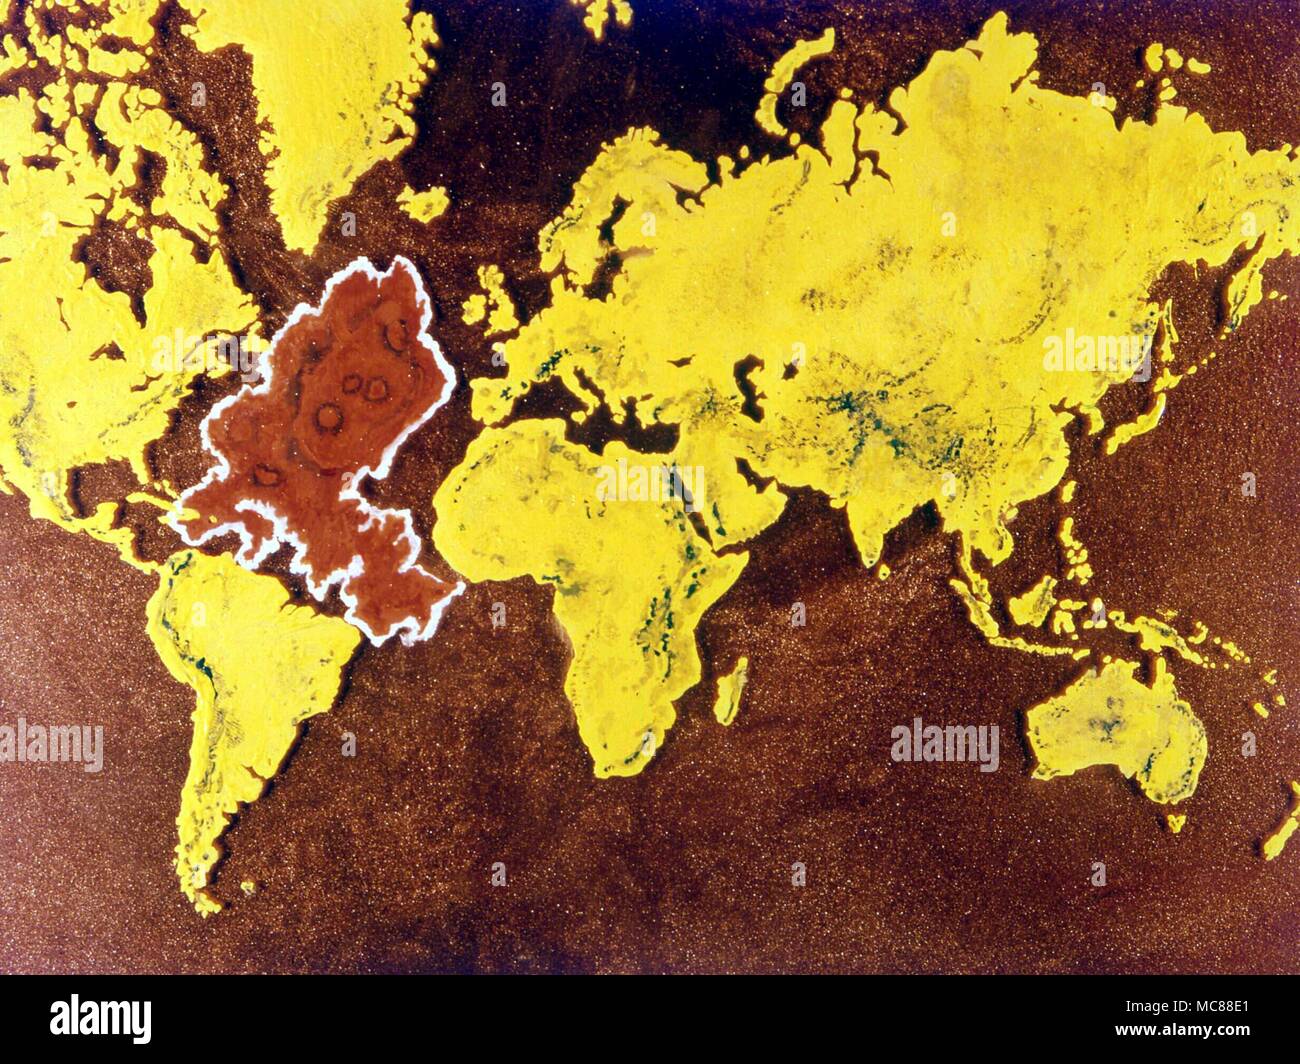 ATLANTIS Carte du monde durant la période de c'est la décadence. La forme et l'emplacement du continent perdu est basé sur les cartes publiées par la Société Théosophique au début du xxe siècle. Banque D'Images